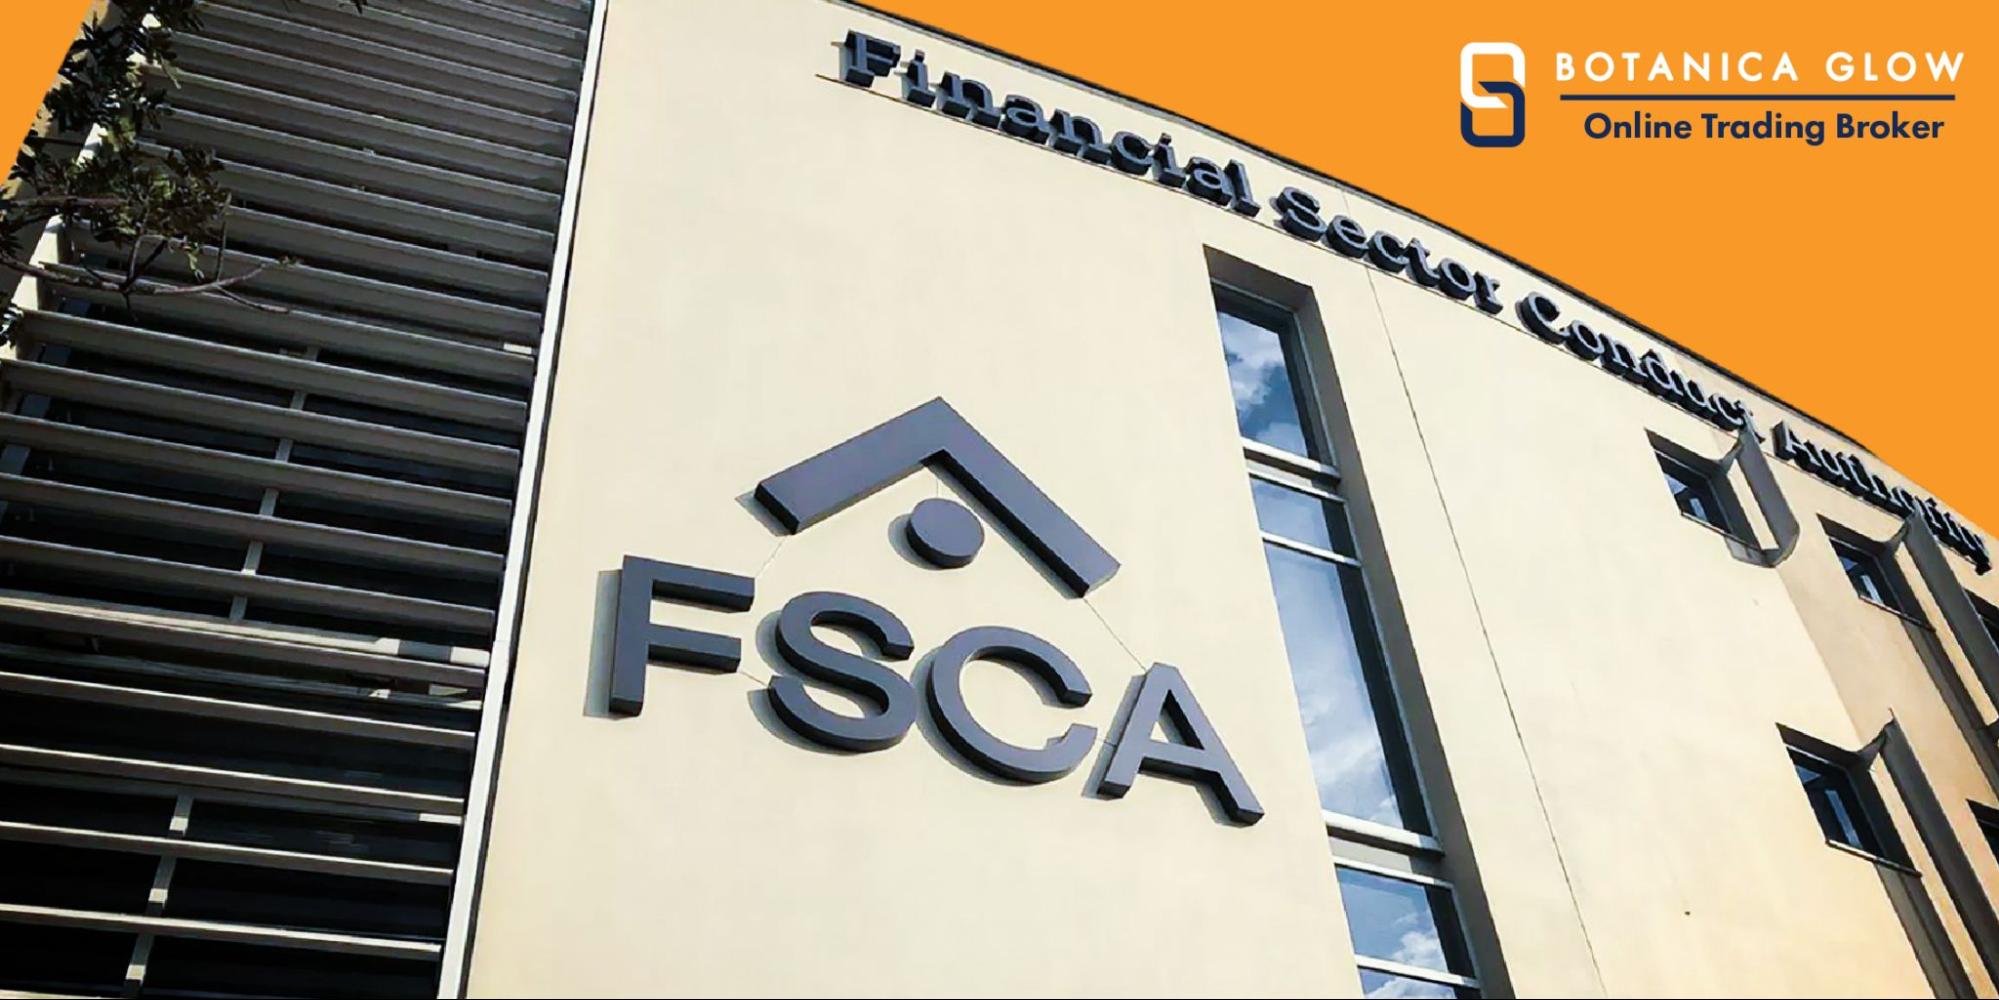 Giấy phép FSCA được cấp bởi đơn vị nào?